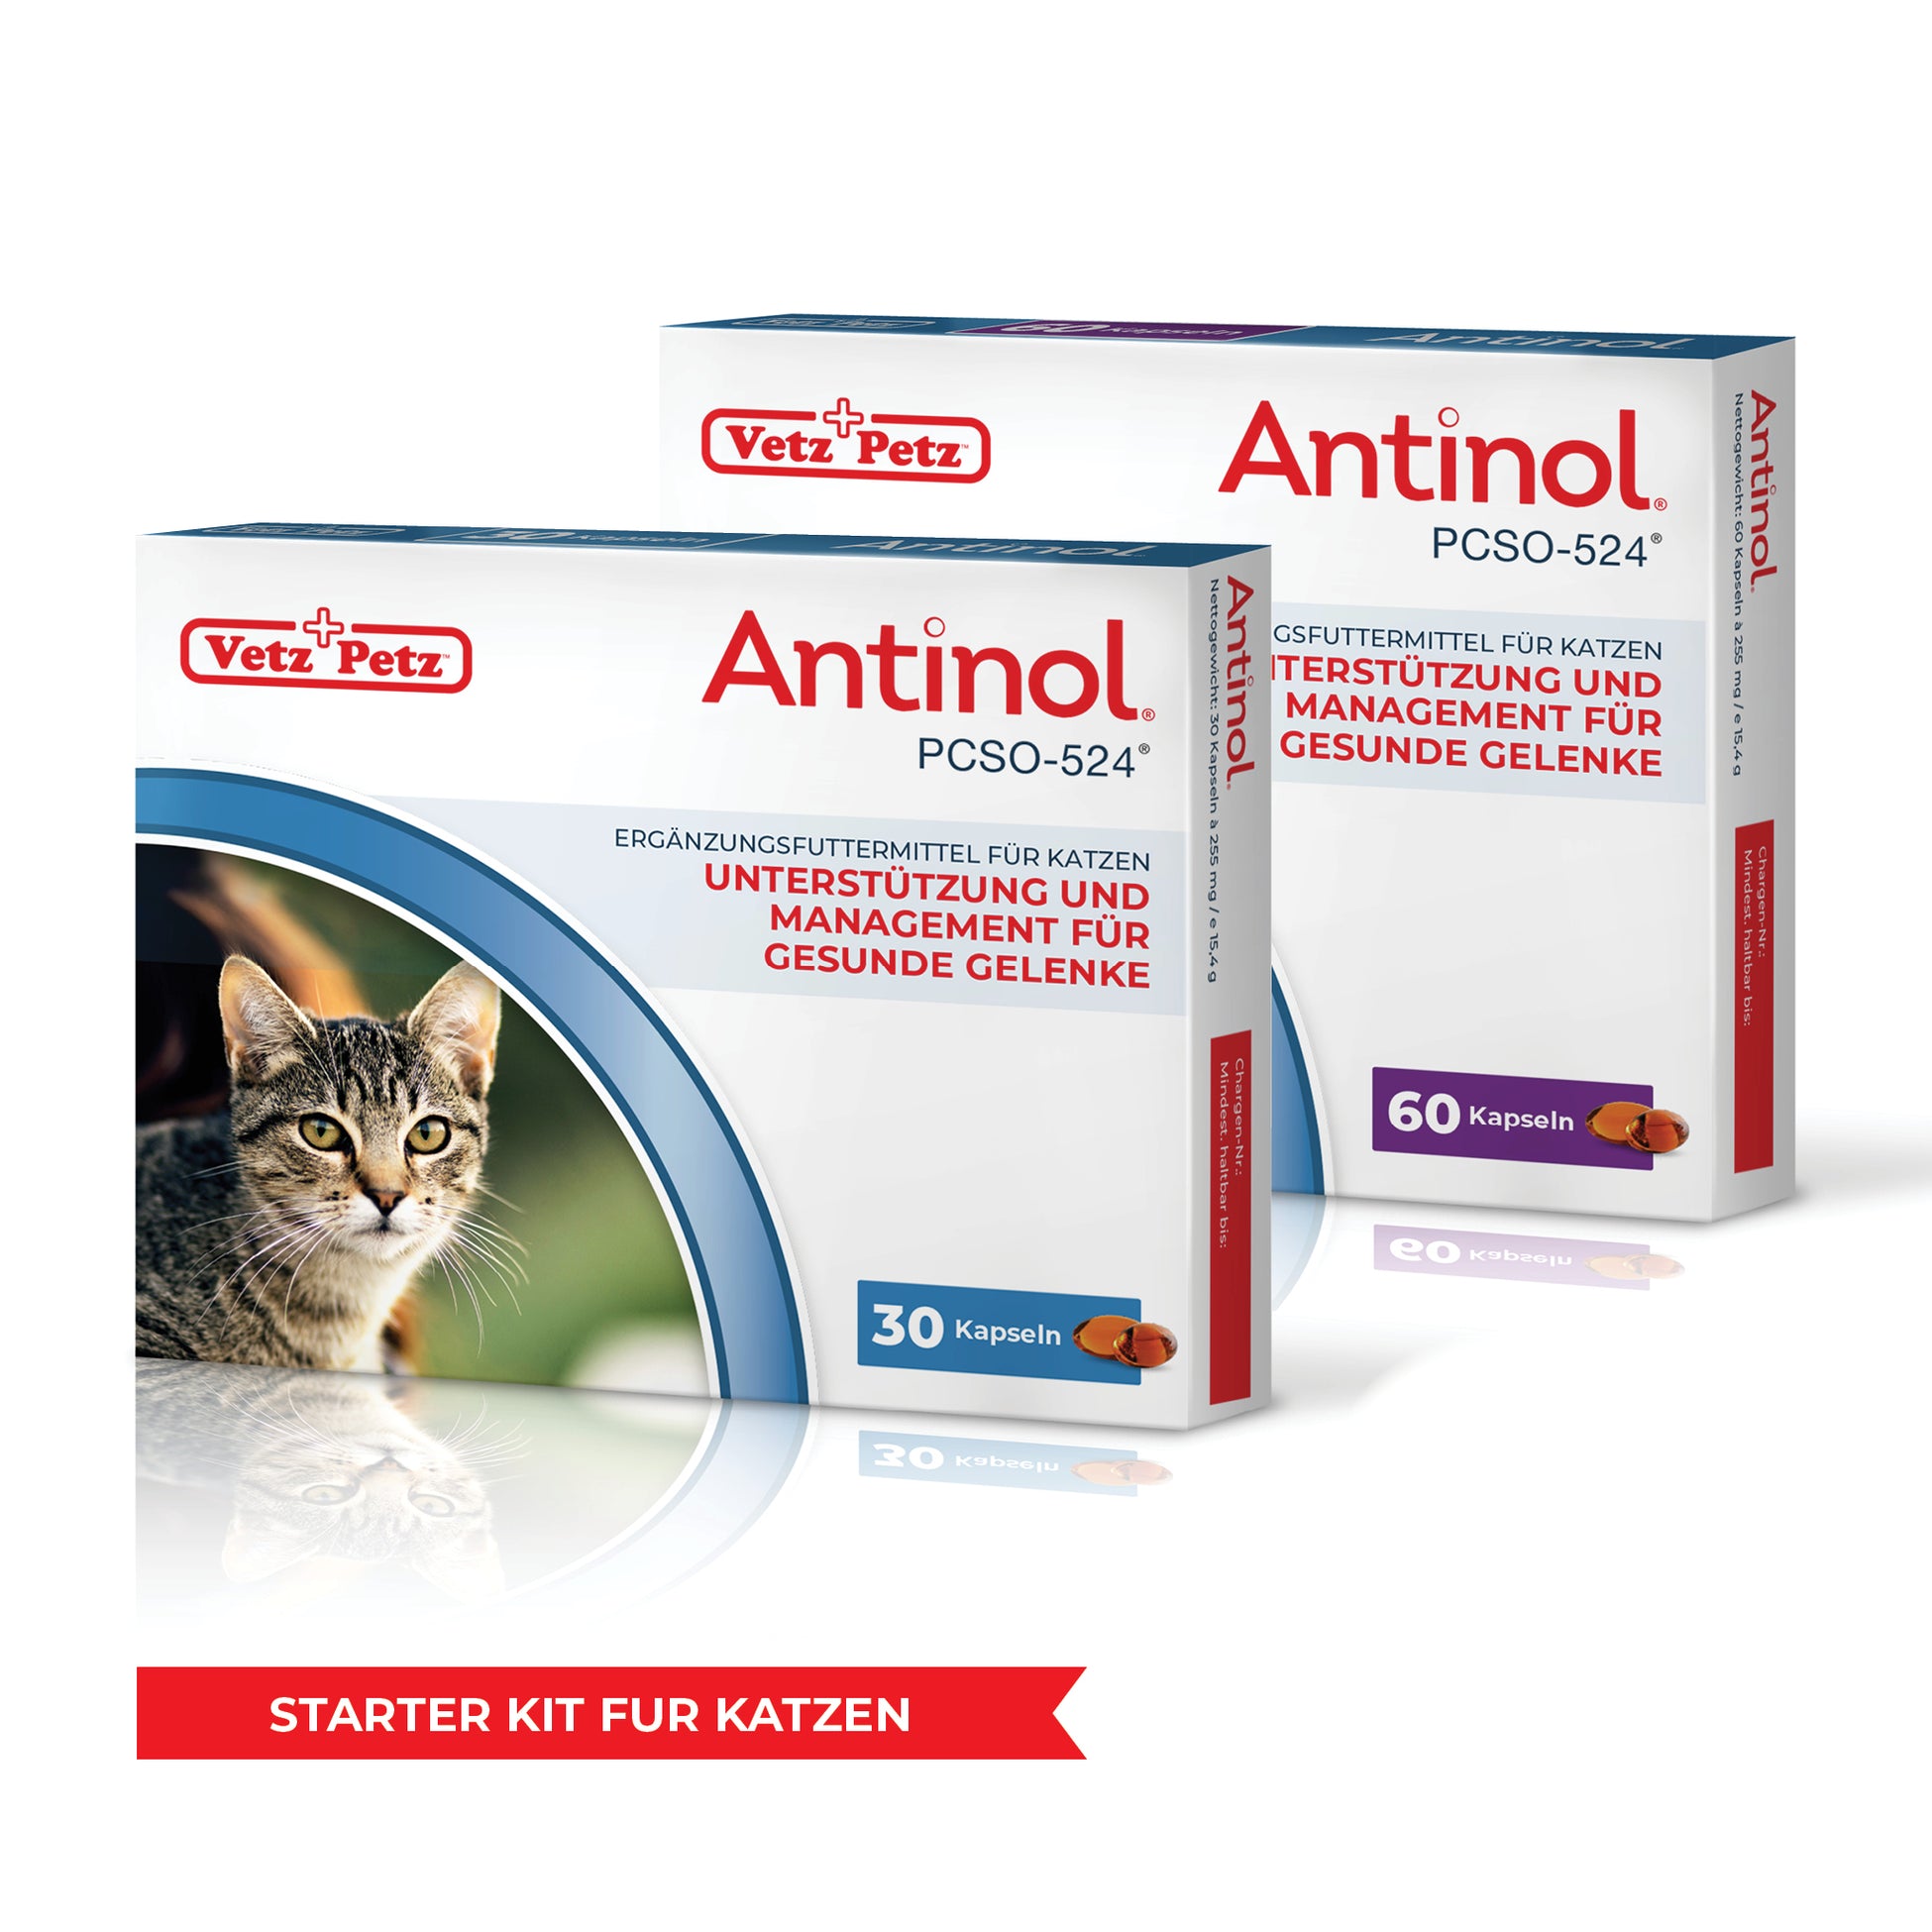 Antinol-Starter-Kit Katzen